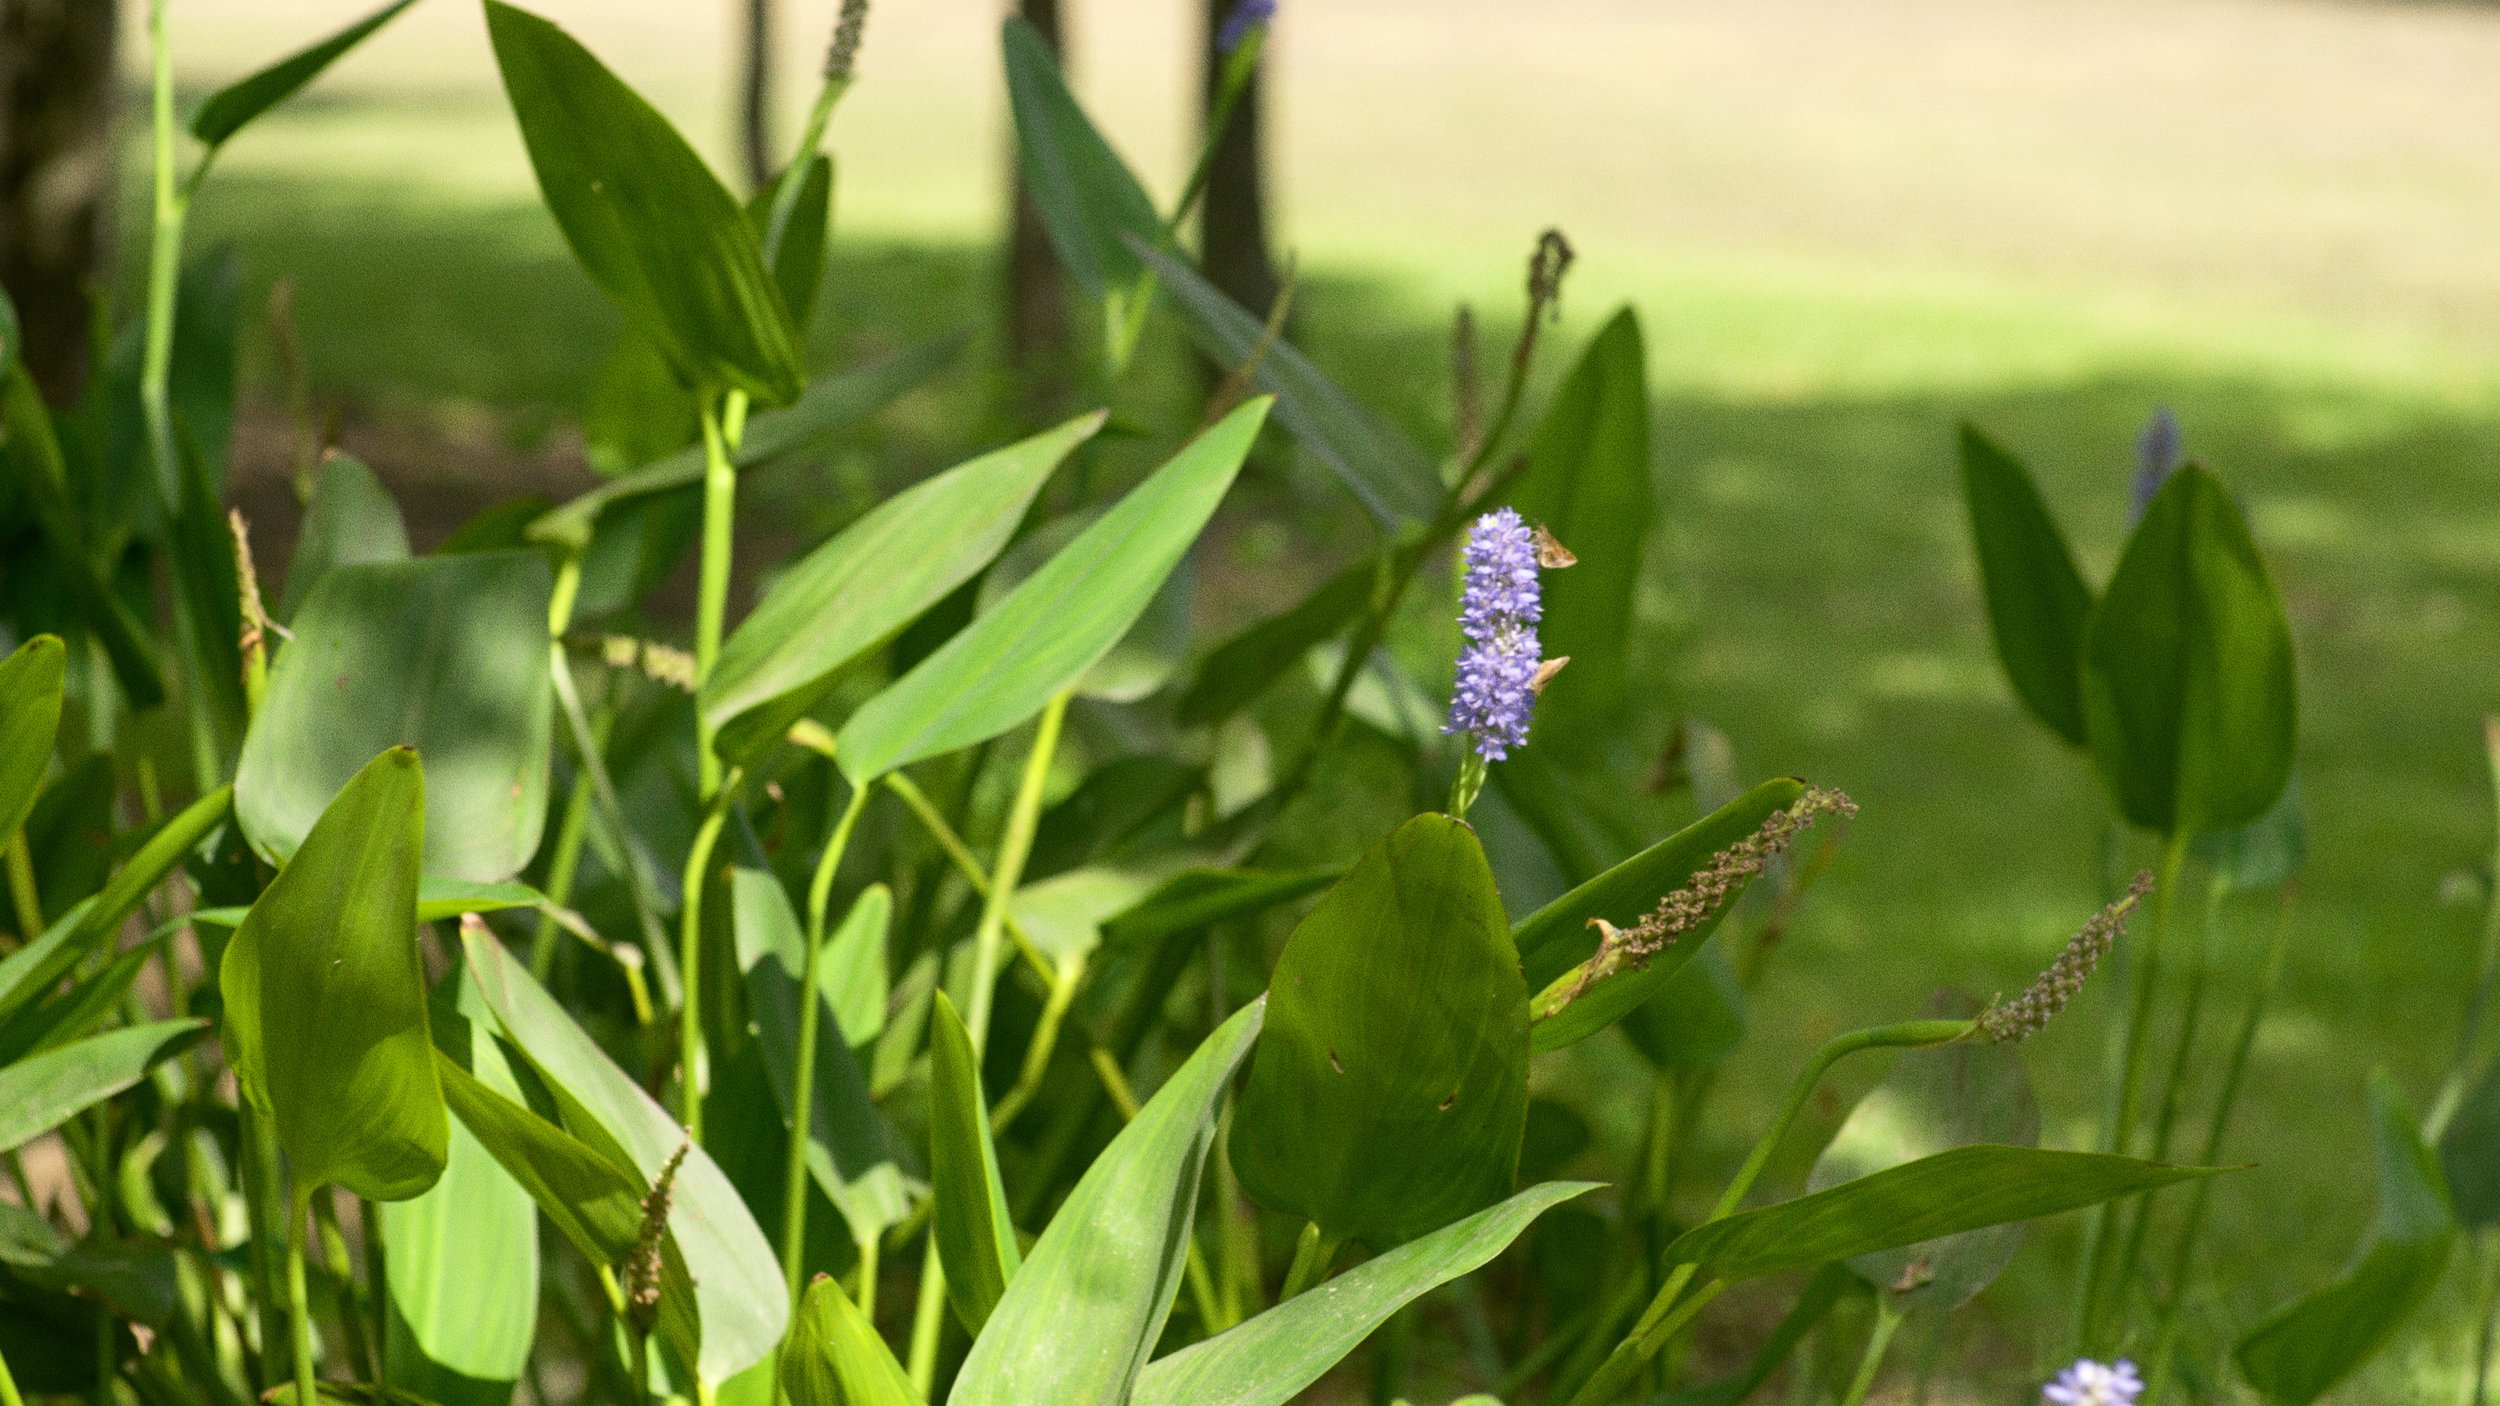 butterflies on purple flowers venue landscaping